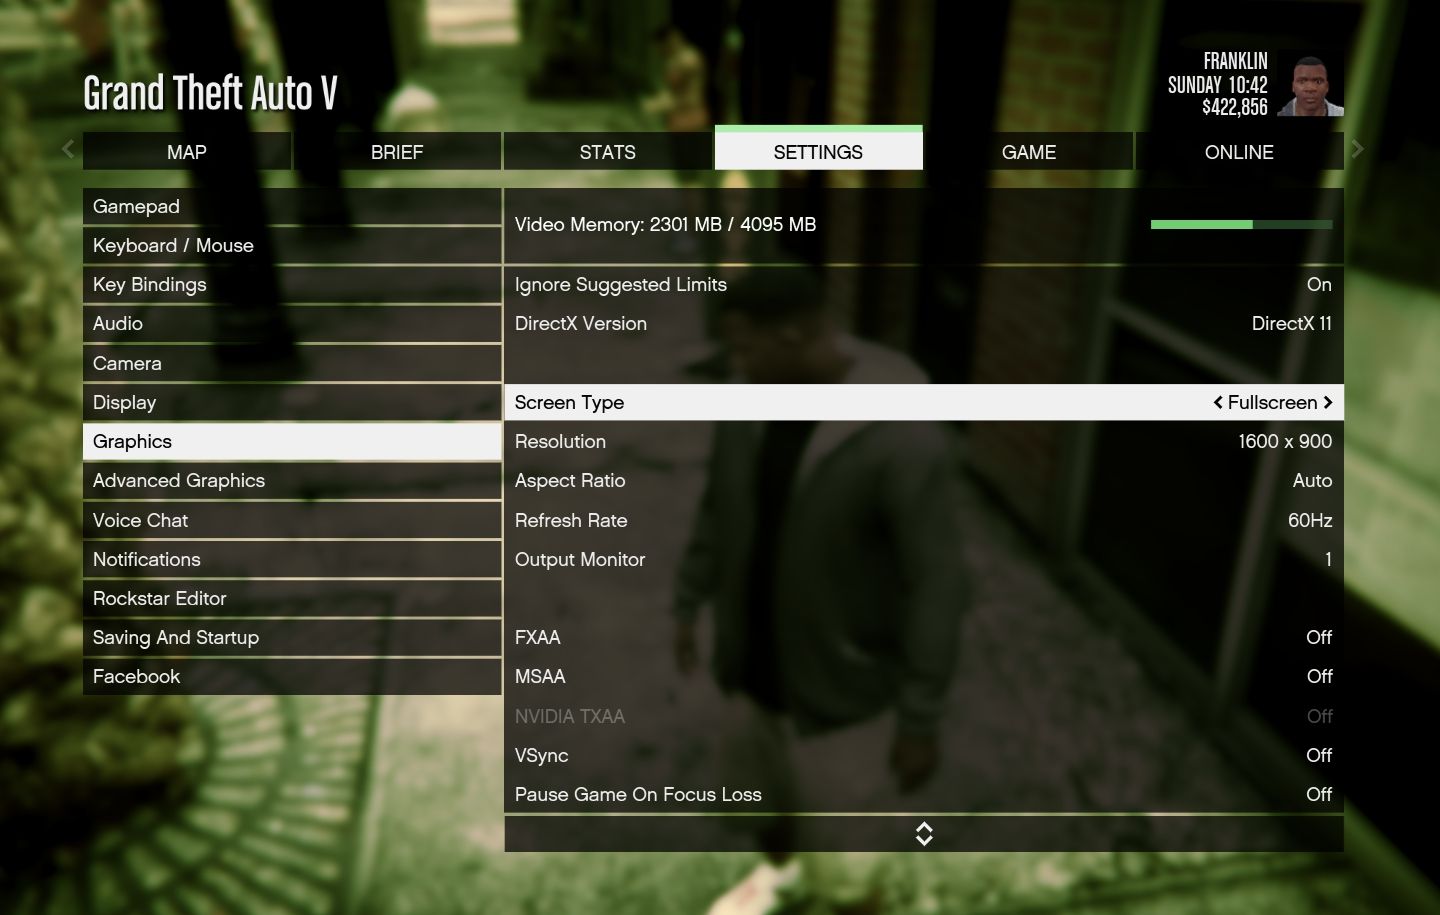 GTA 5 Settings menu